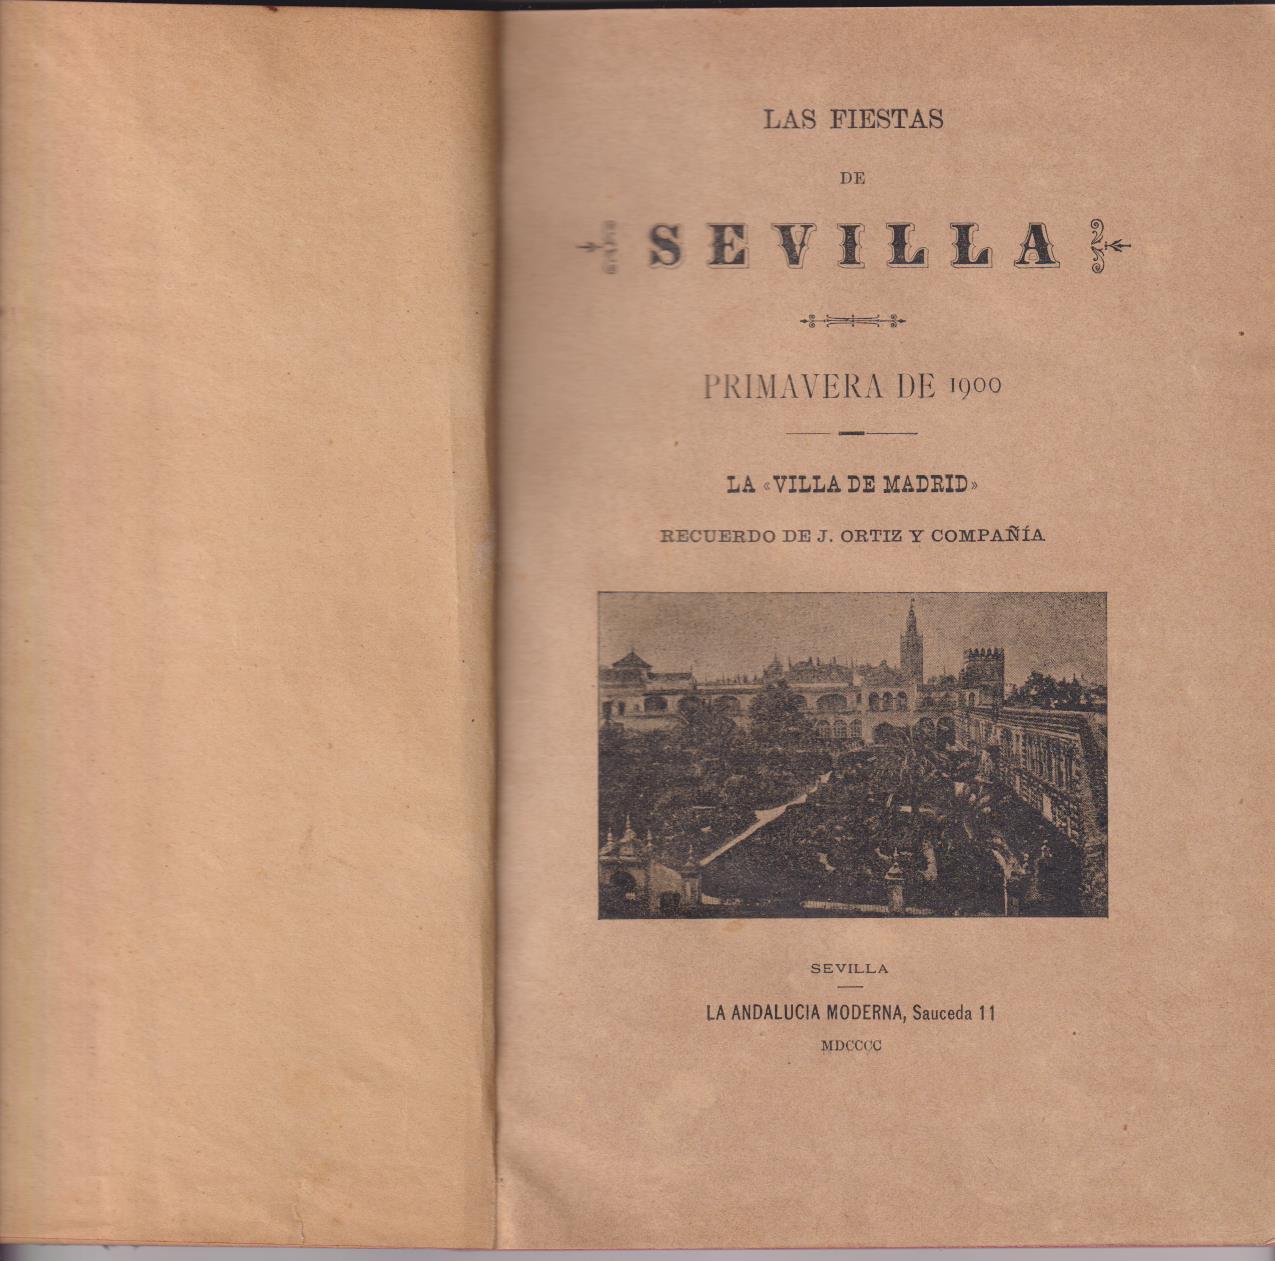 Las Fiestas de Sevilla. Primavera de 1900. Recuerdo de J. Ortiz y Cía. La Villa de Madrid. MUY RARO